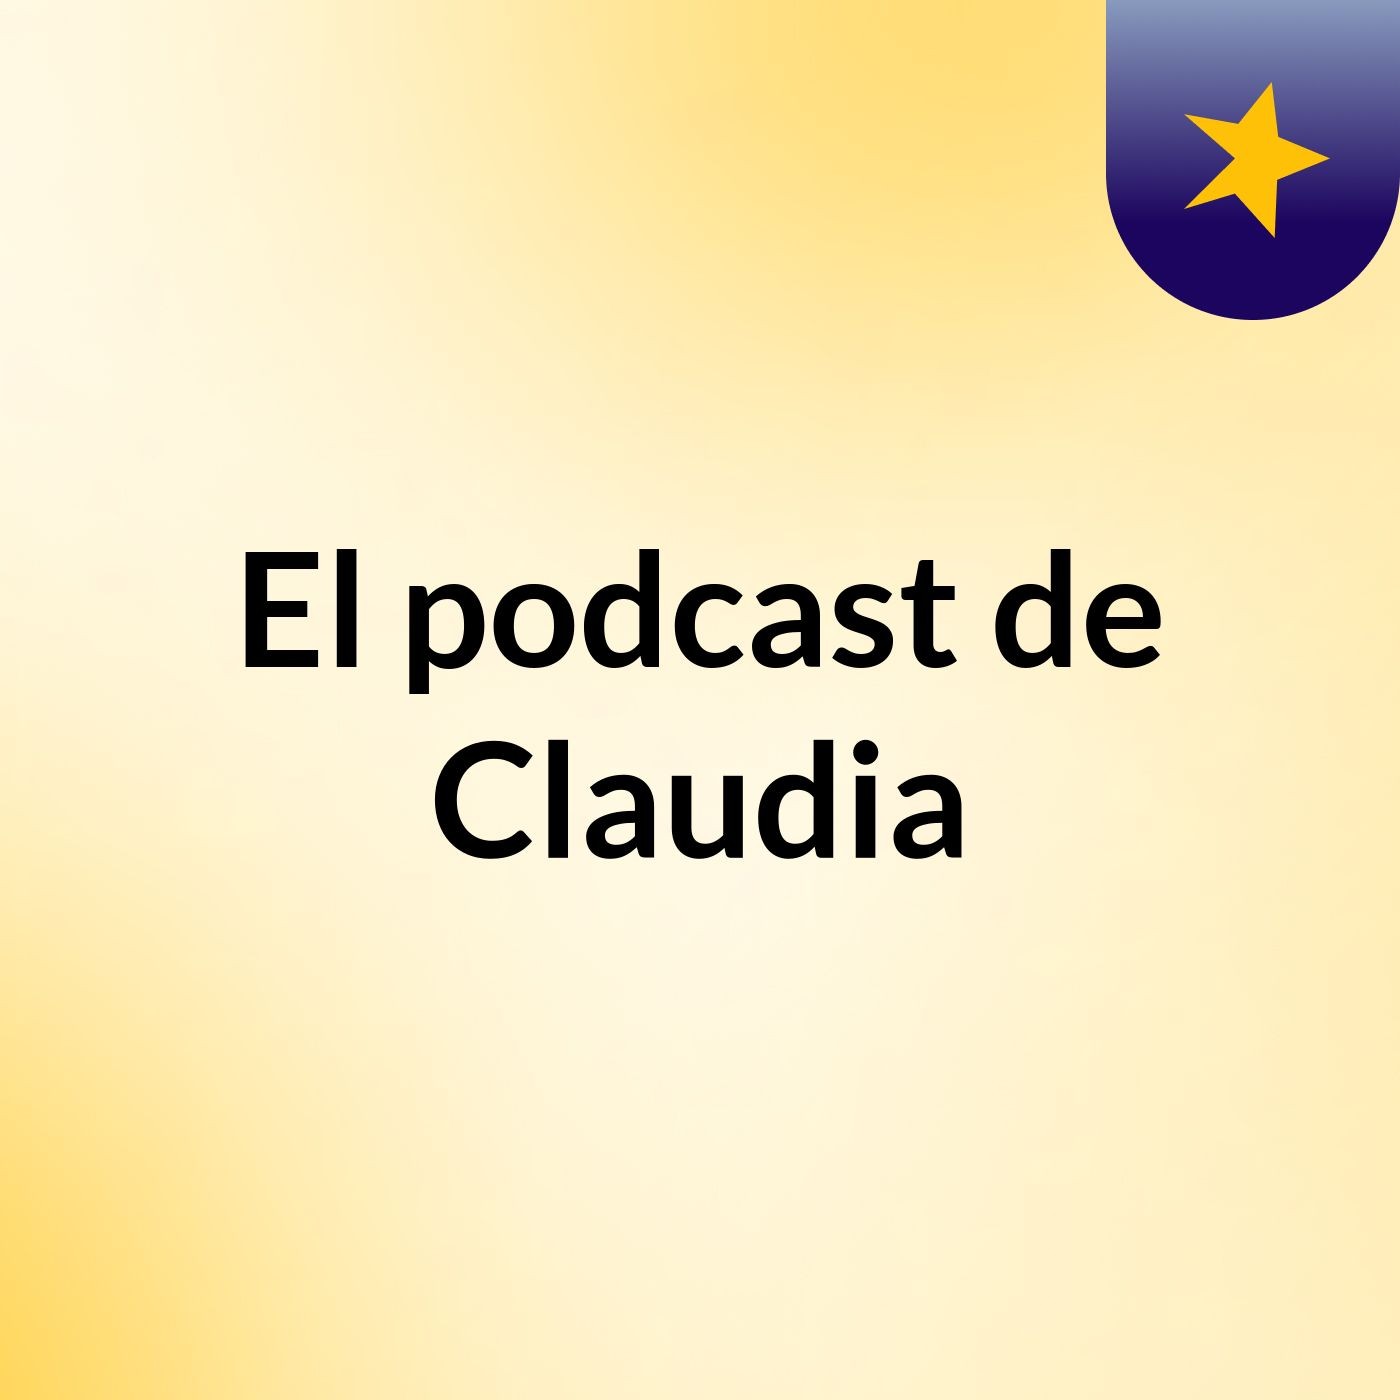 El podcast de Claudia